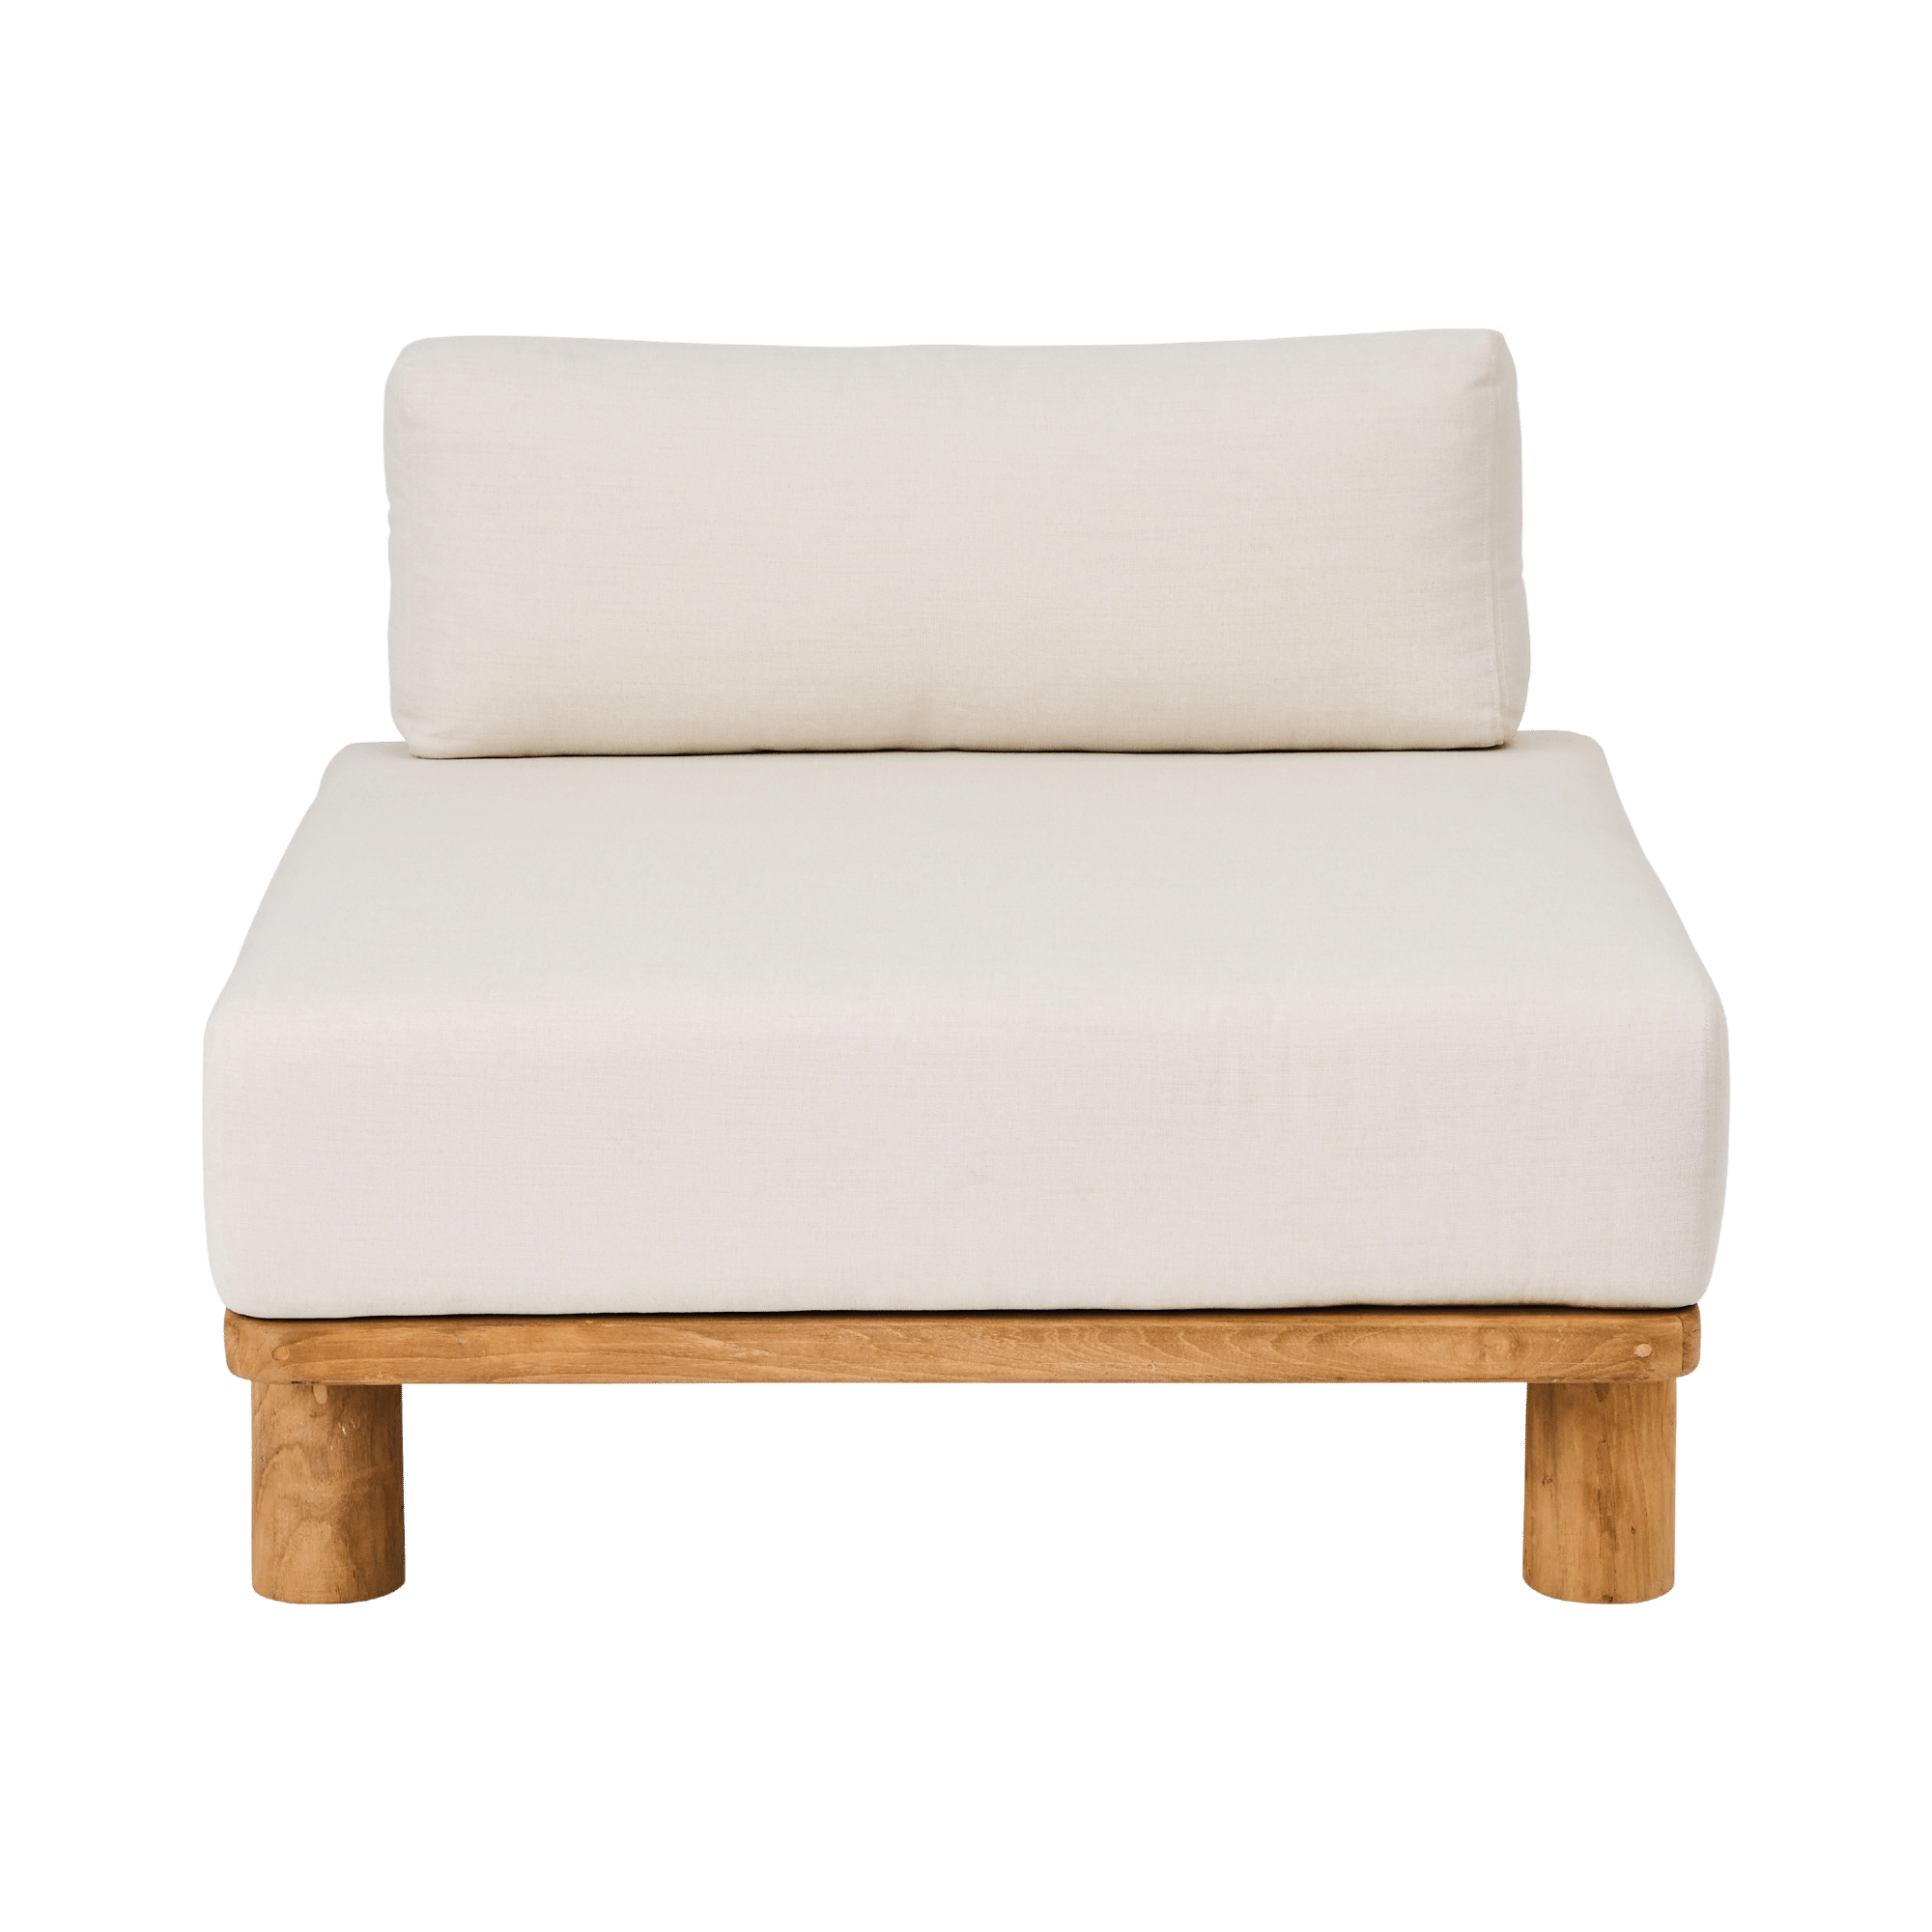 Teak Sofa Seating Module - THAT COOL LIVING